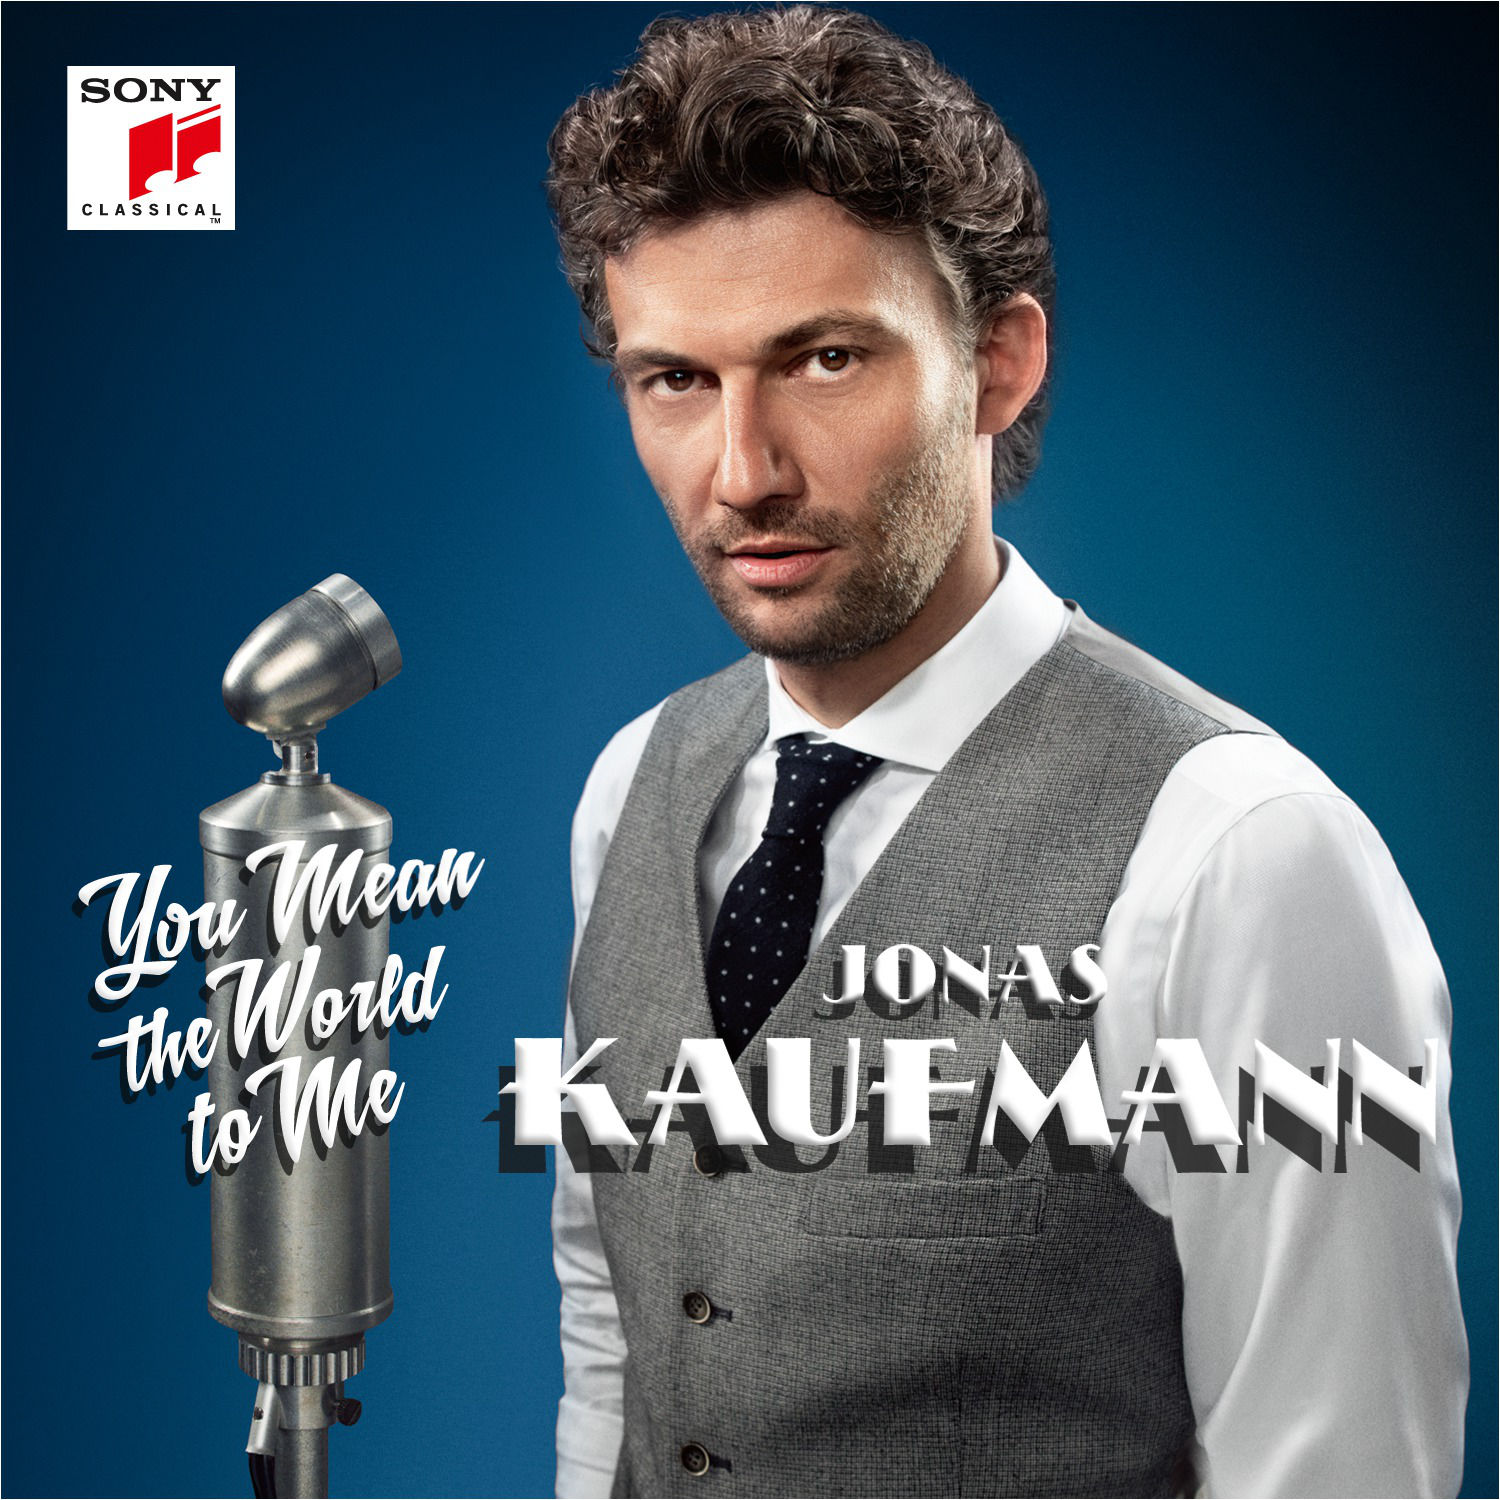 Jonas Kaufmann - You Mean the World to Me (2014) [HDTracks FLAC 24bit/96kHz]